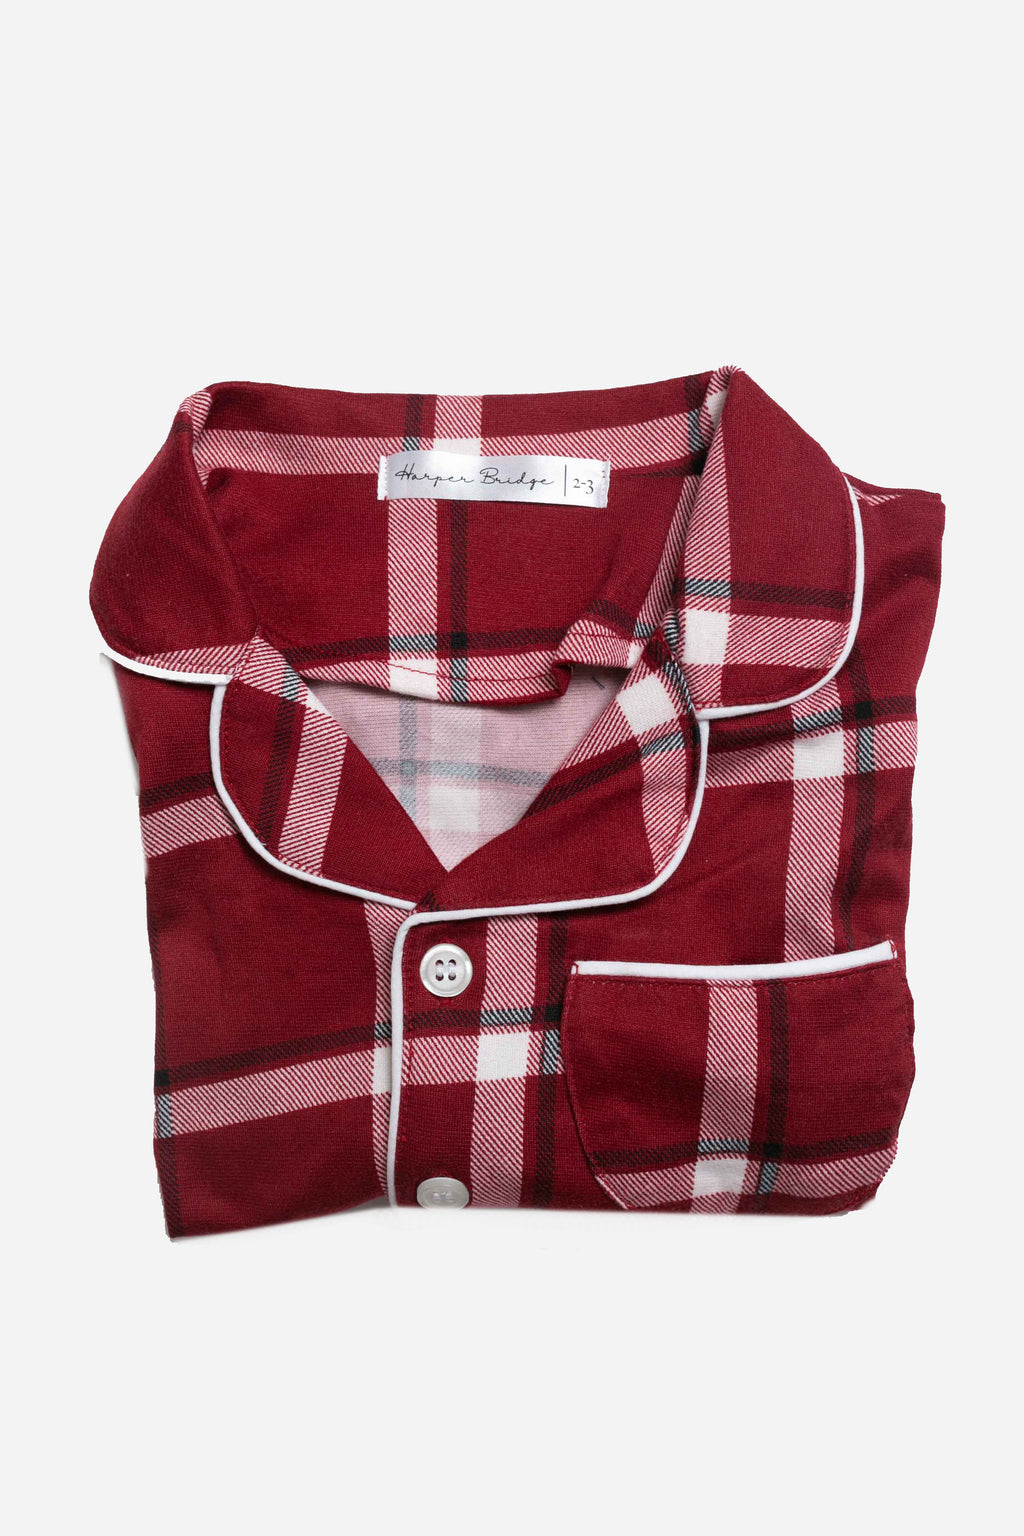 Cozy Red Plaid Kid's Pajama Set